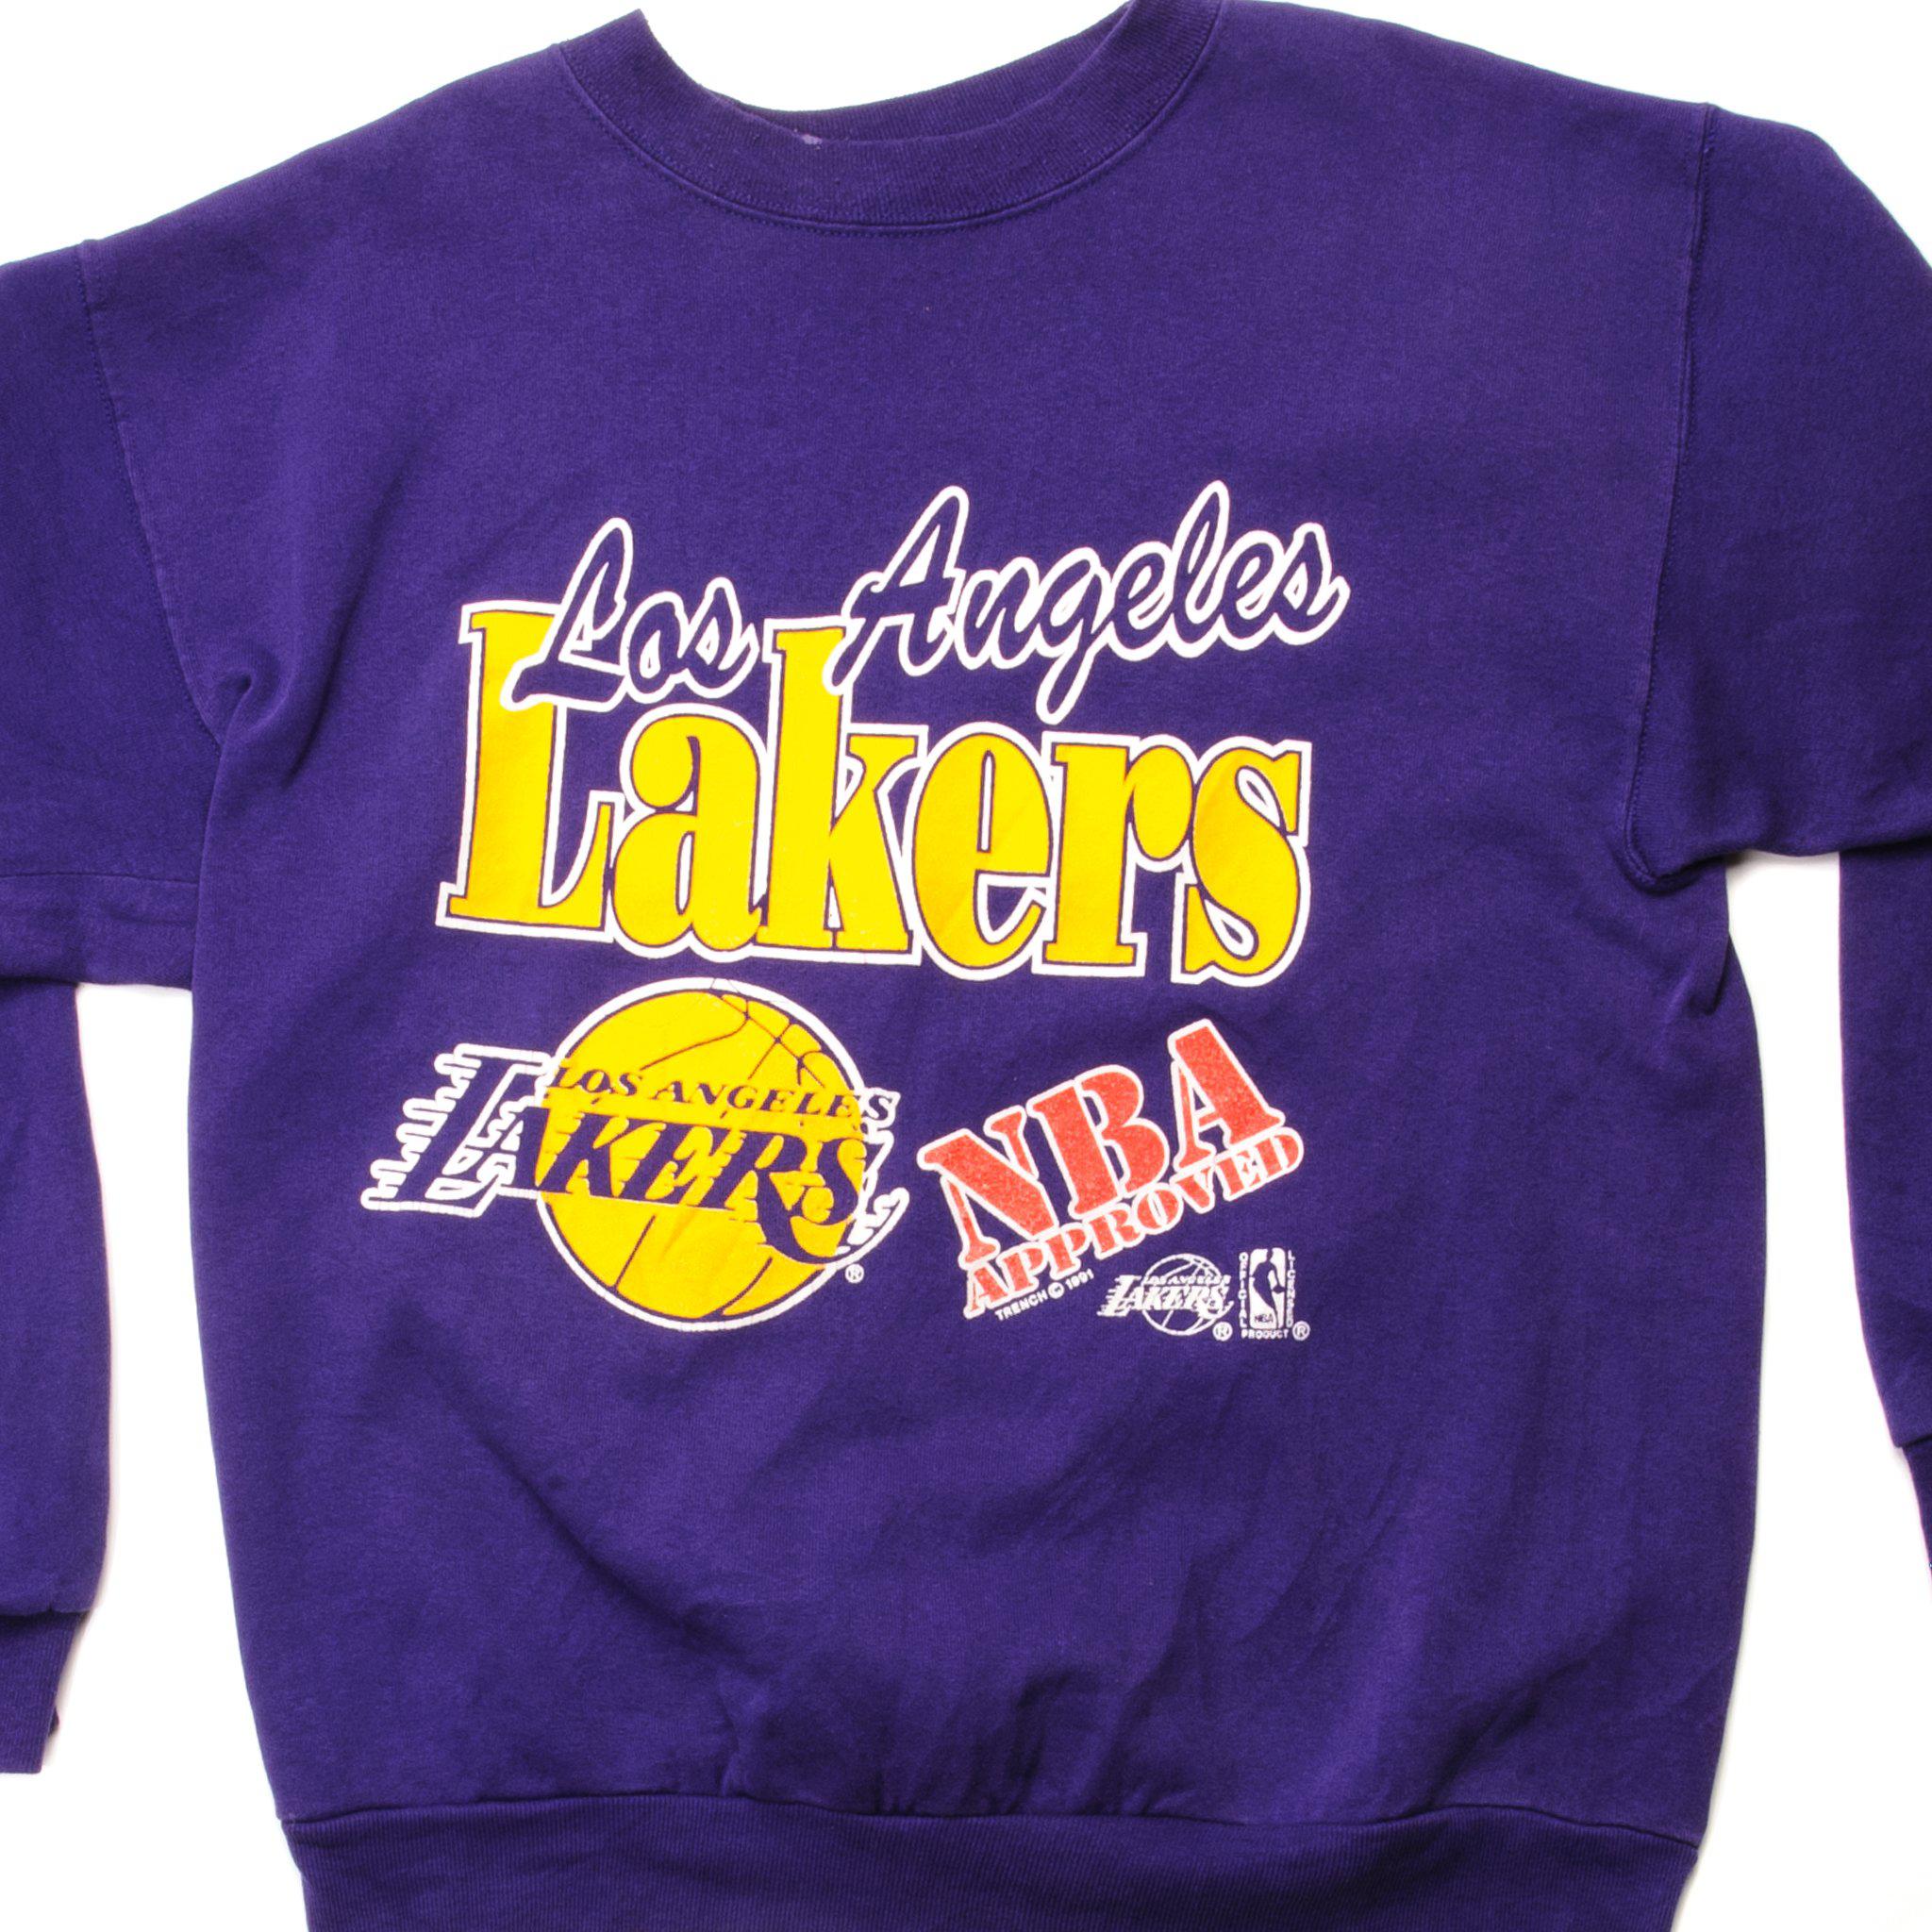 Los Angeles Lakers Hoodie  Hoodies, Shop sweatshirts, Lakers